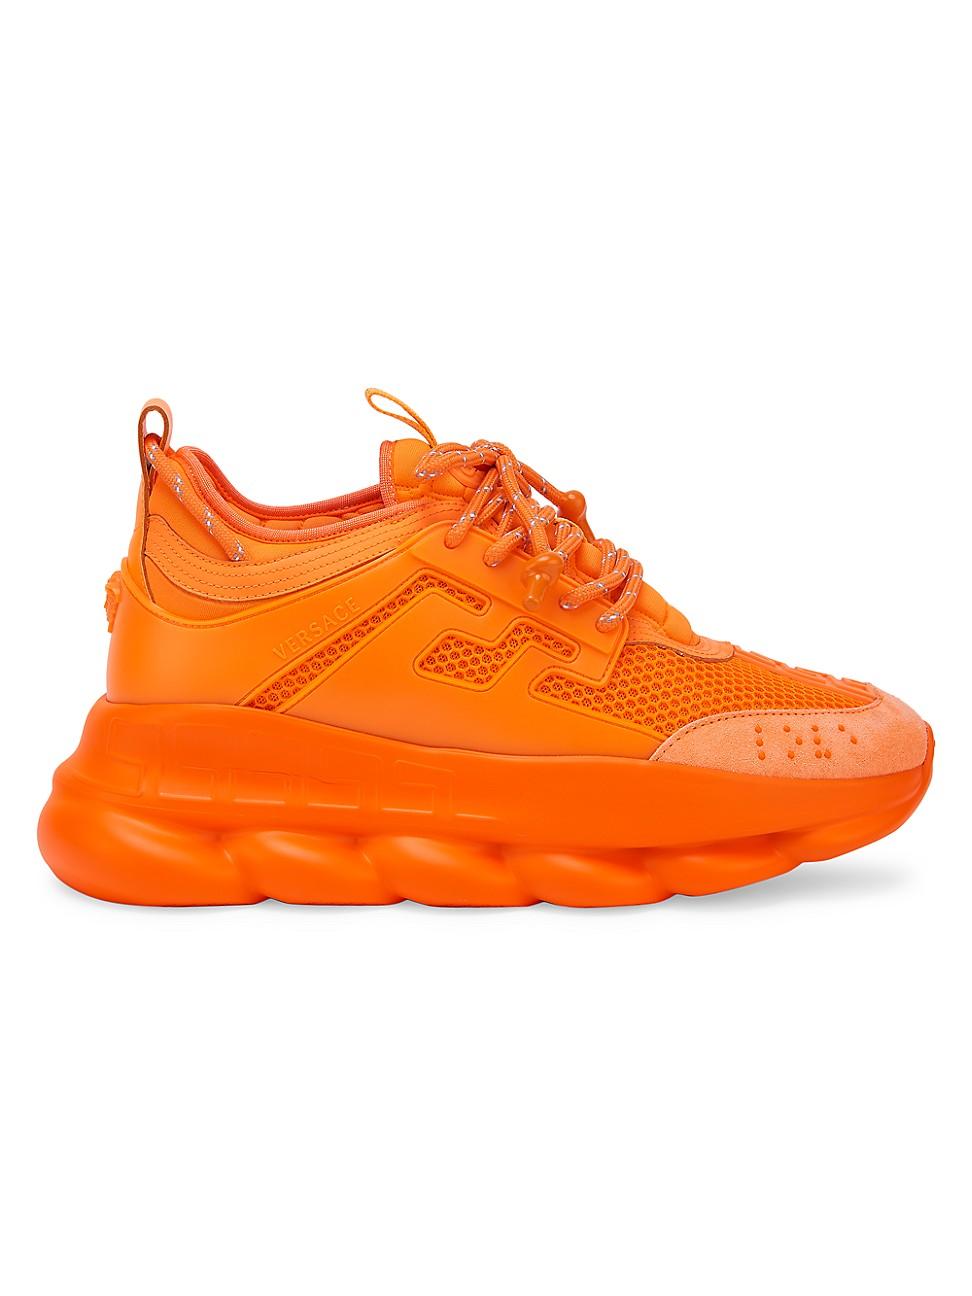 Versace Chain Reaction Sneakers in Orange for Men